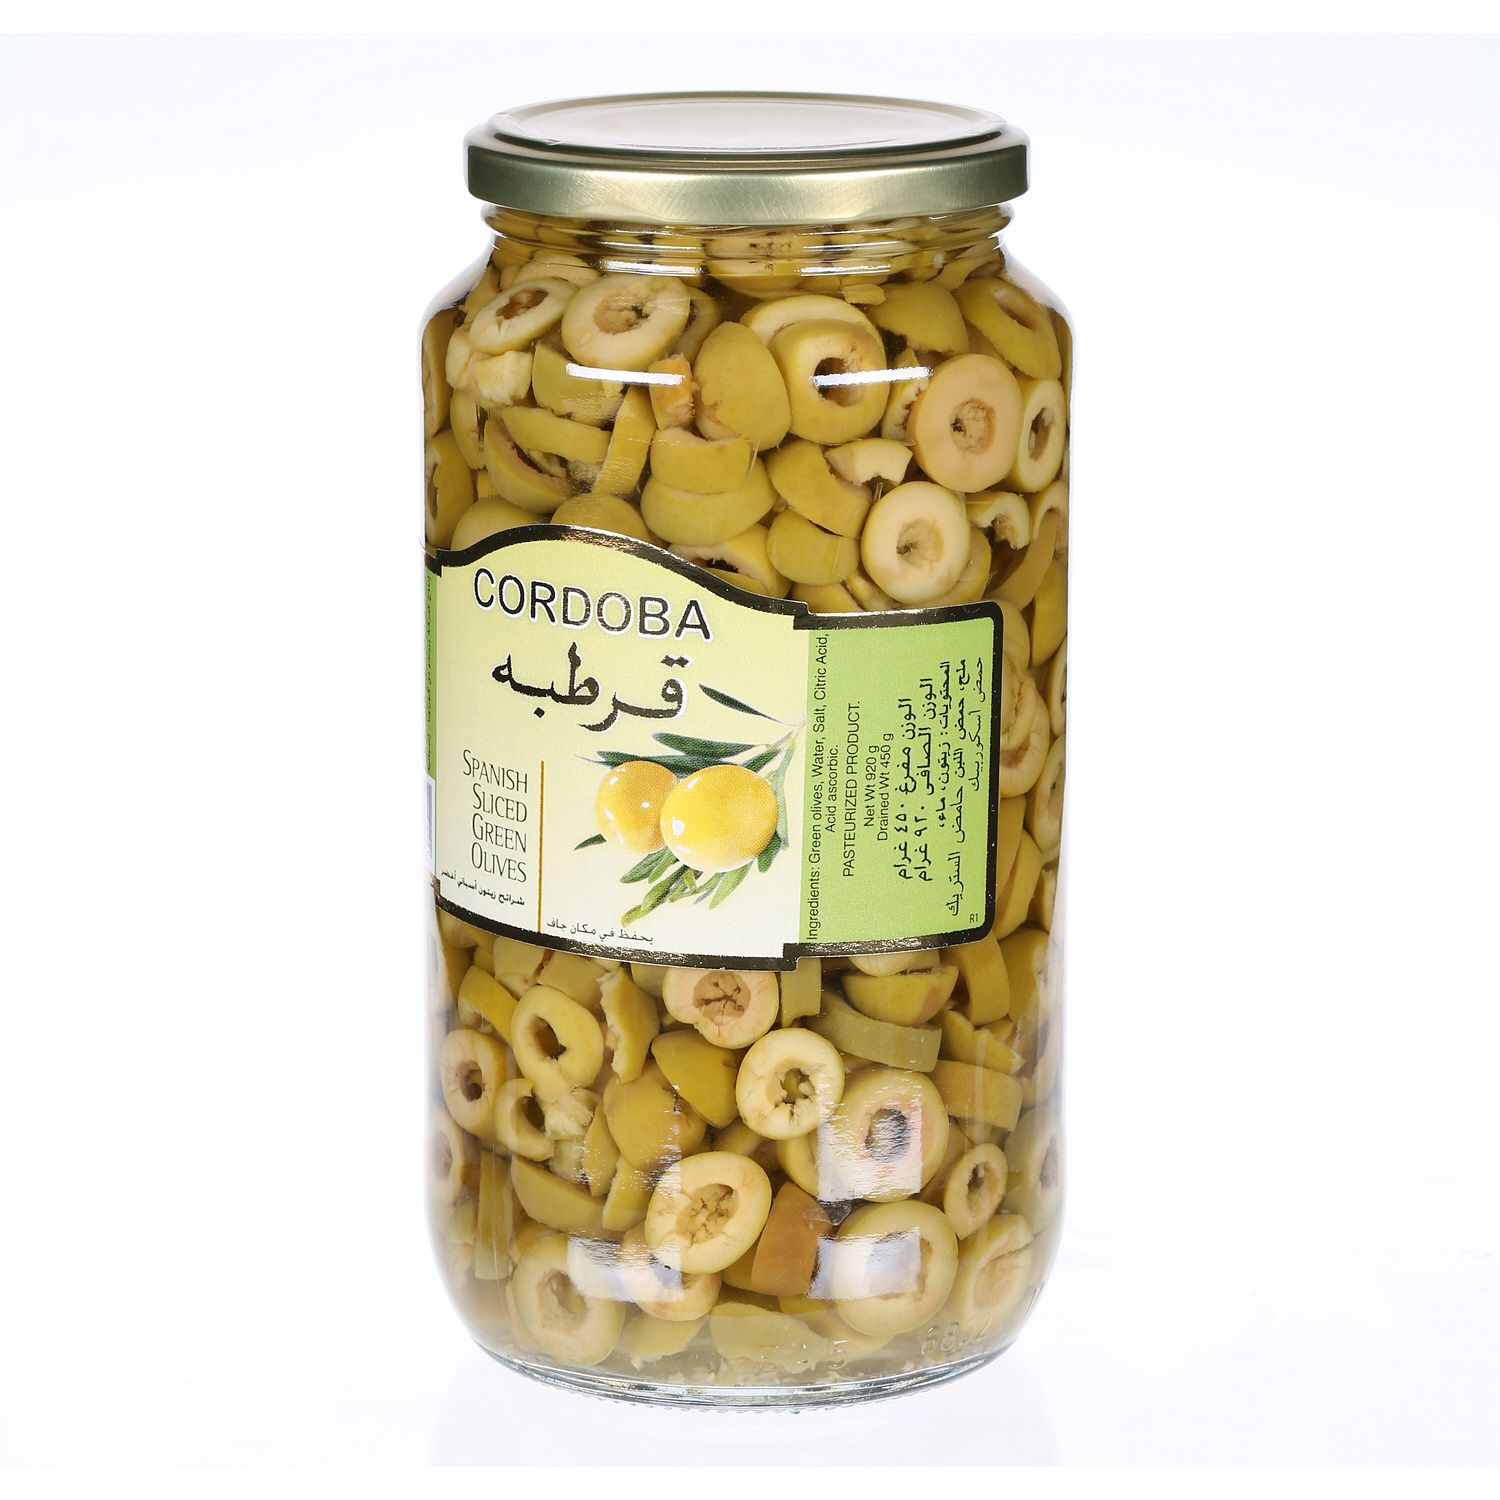 Cordoba Slicesd Green Olives 450 g